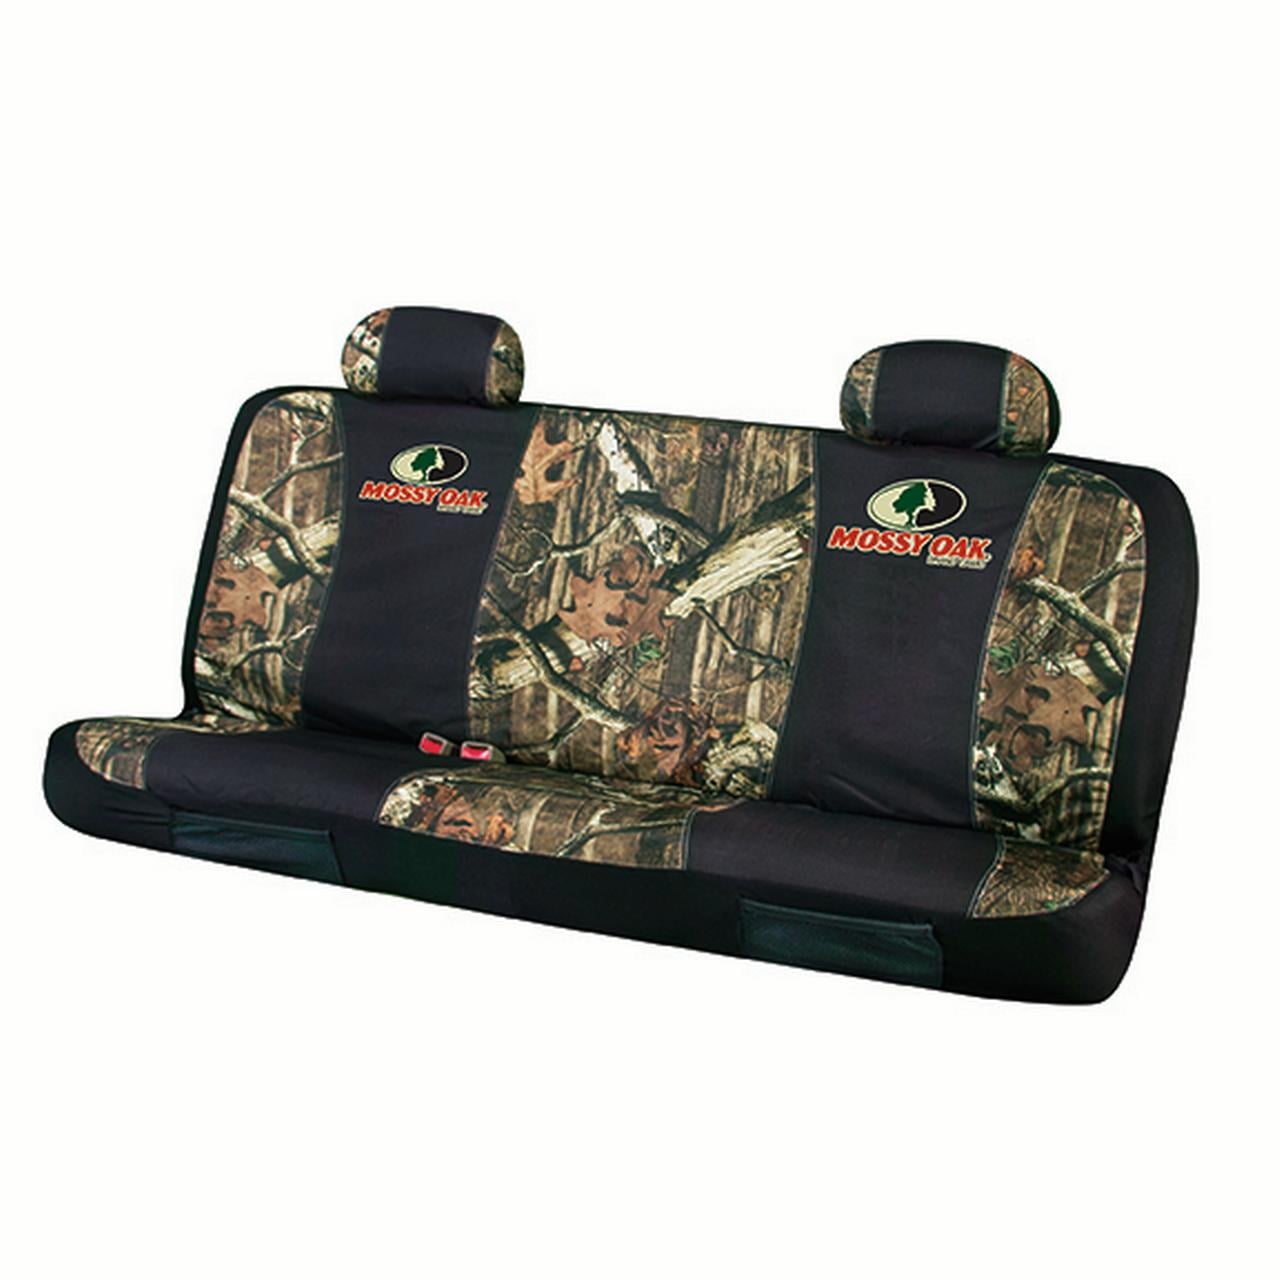 Mossy Oak Seat Covers - Walmart.com 